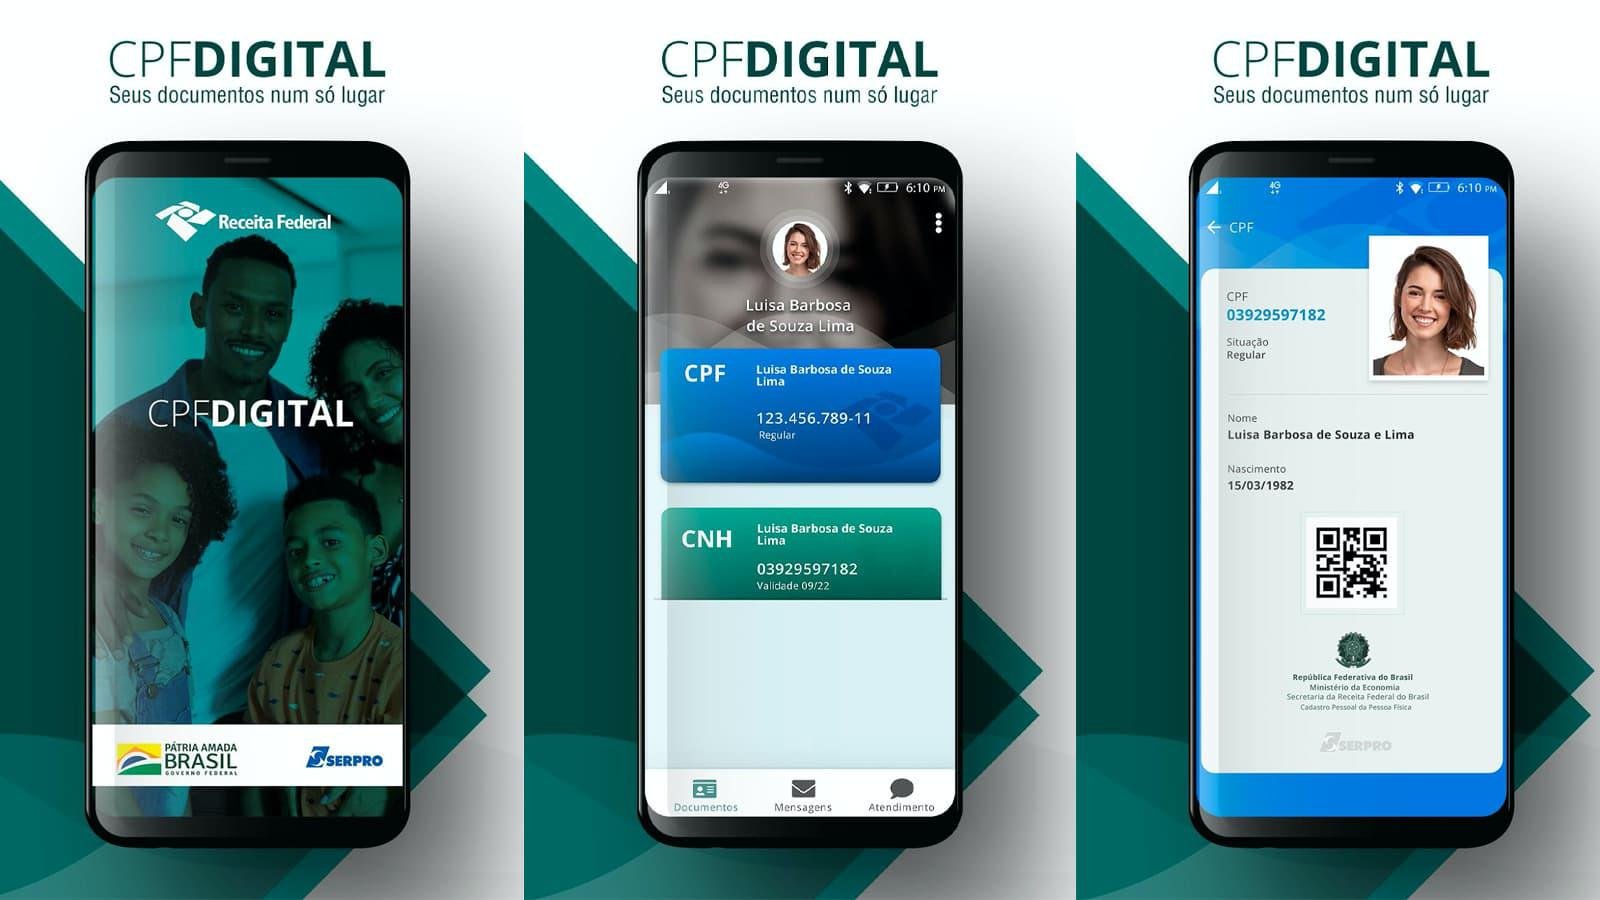 Se preferir, também pode usar o app oficial do CPF Digital em seu celular